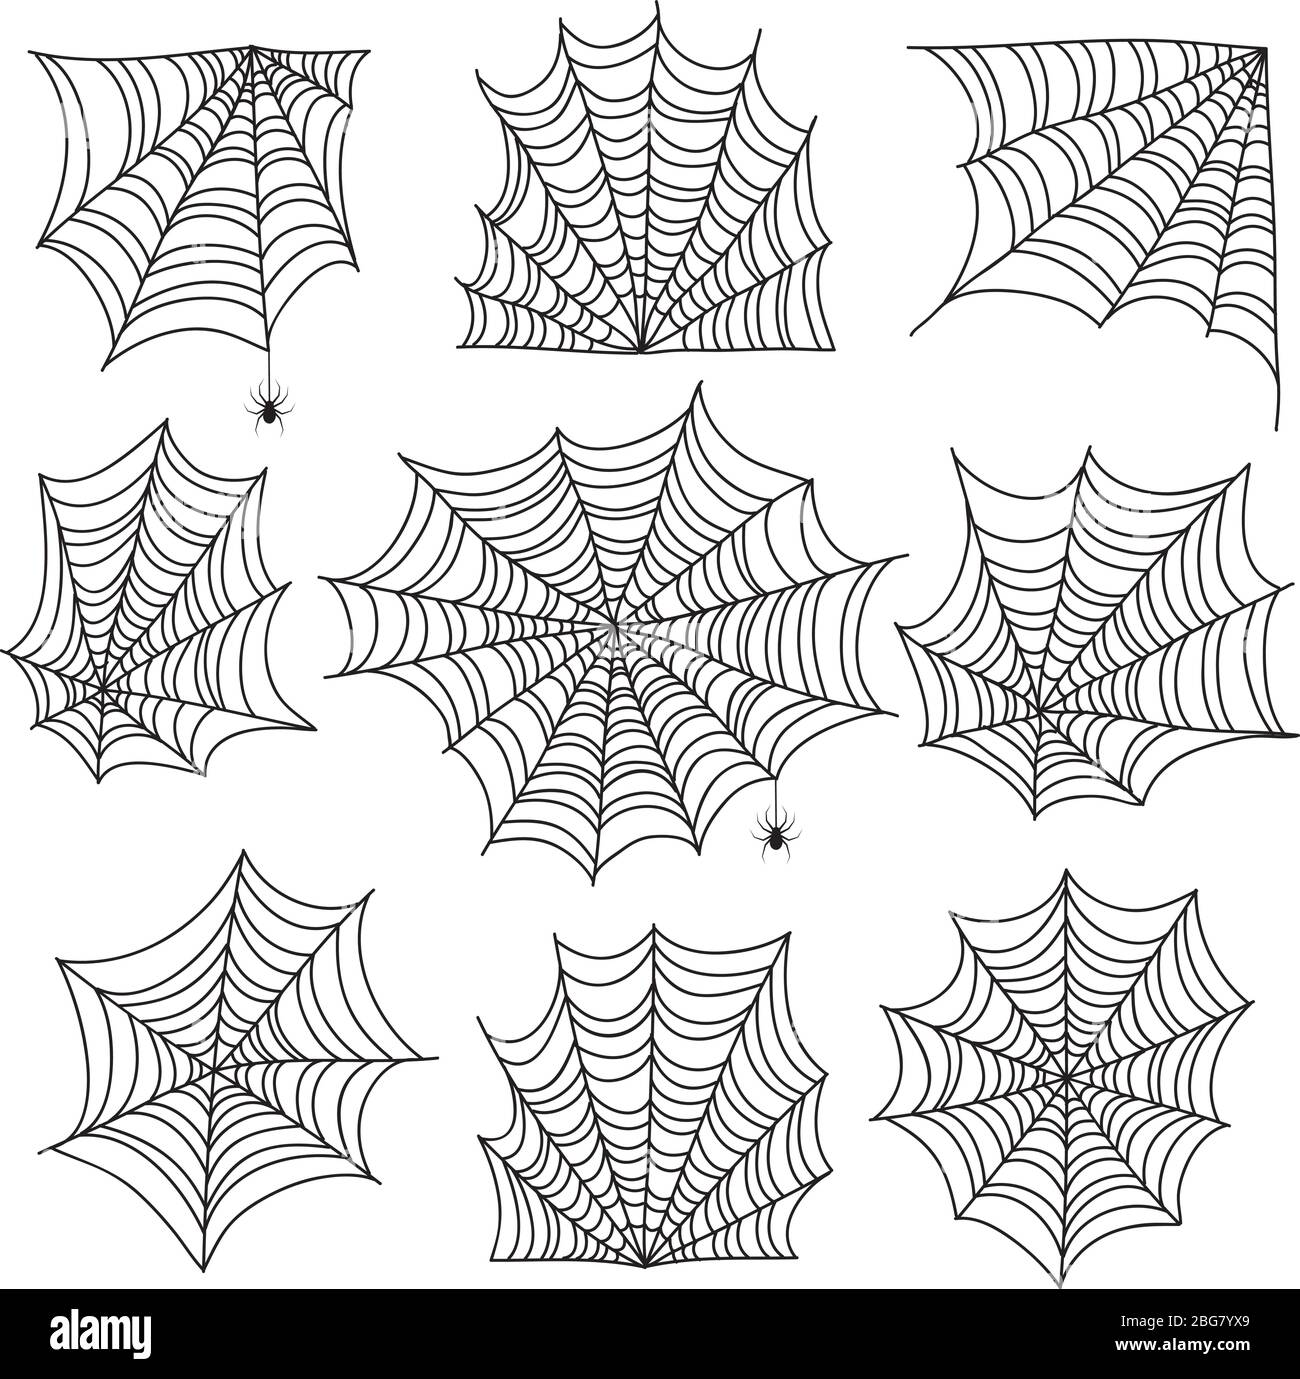 Spiderweb. Toile d'araignée et coins de toile craotés avec araignée. Icônes vectorielles Halloween isolées sur fond blanc. Coin crasseux pour Halloween, illustration de silhouette d'araignée effrayante Illustration de Vecteur